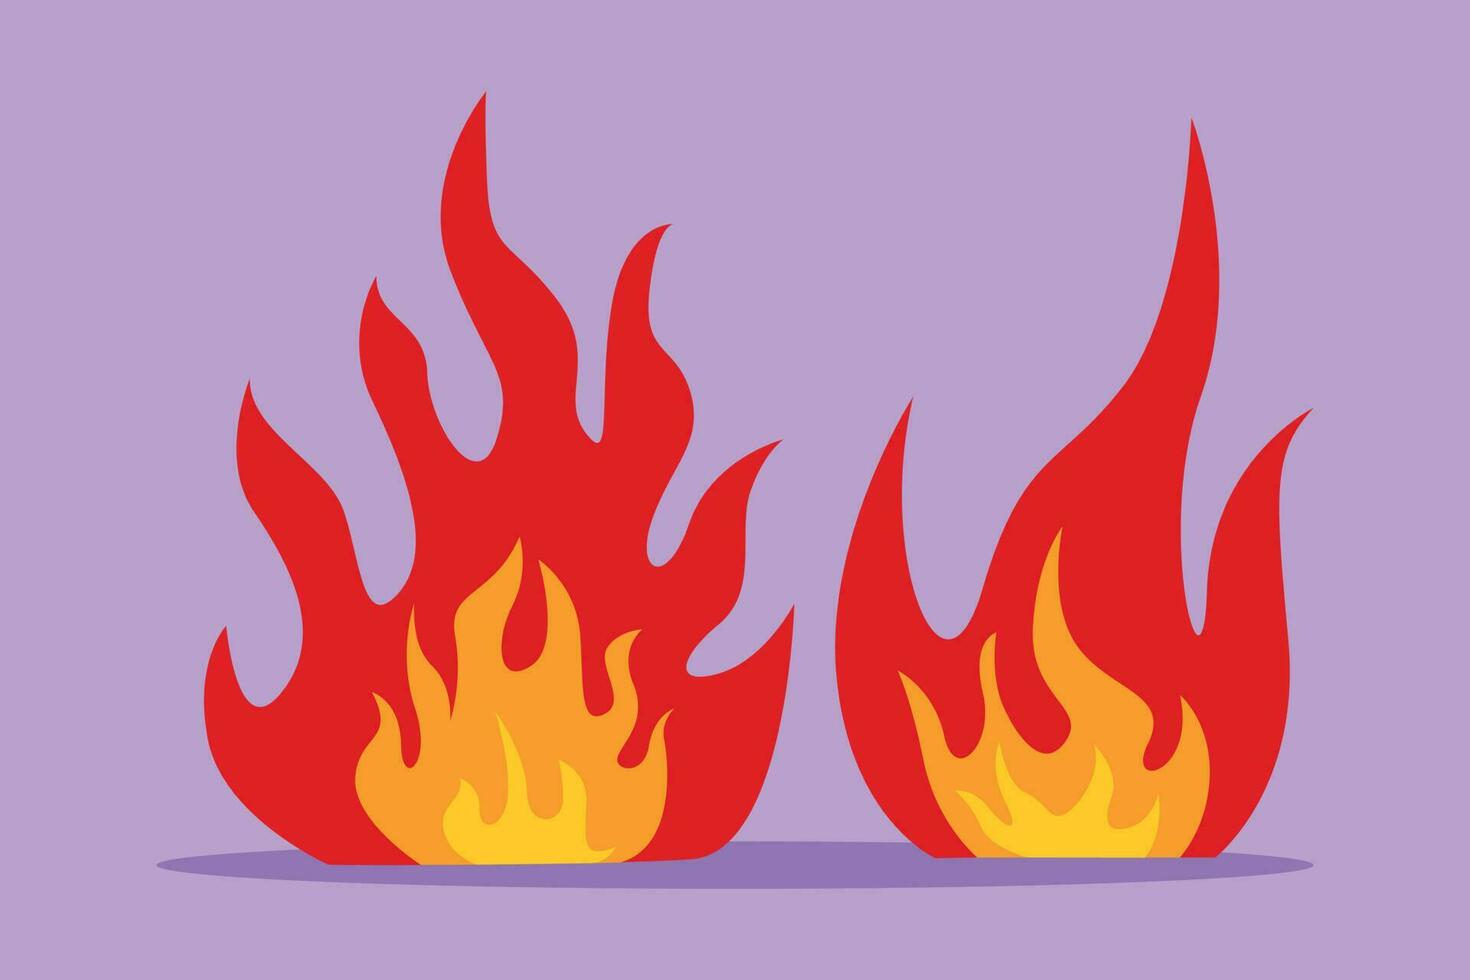 Emblema de chama vermelha sinal de fogo símbolo de perigo